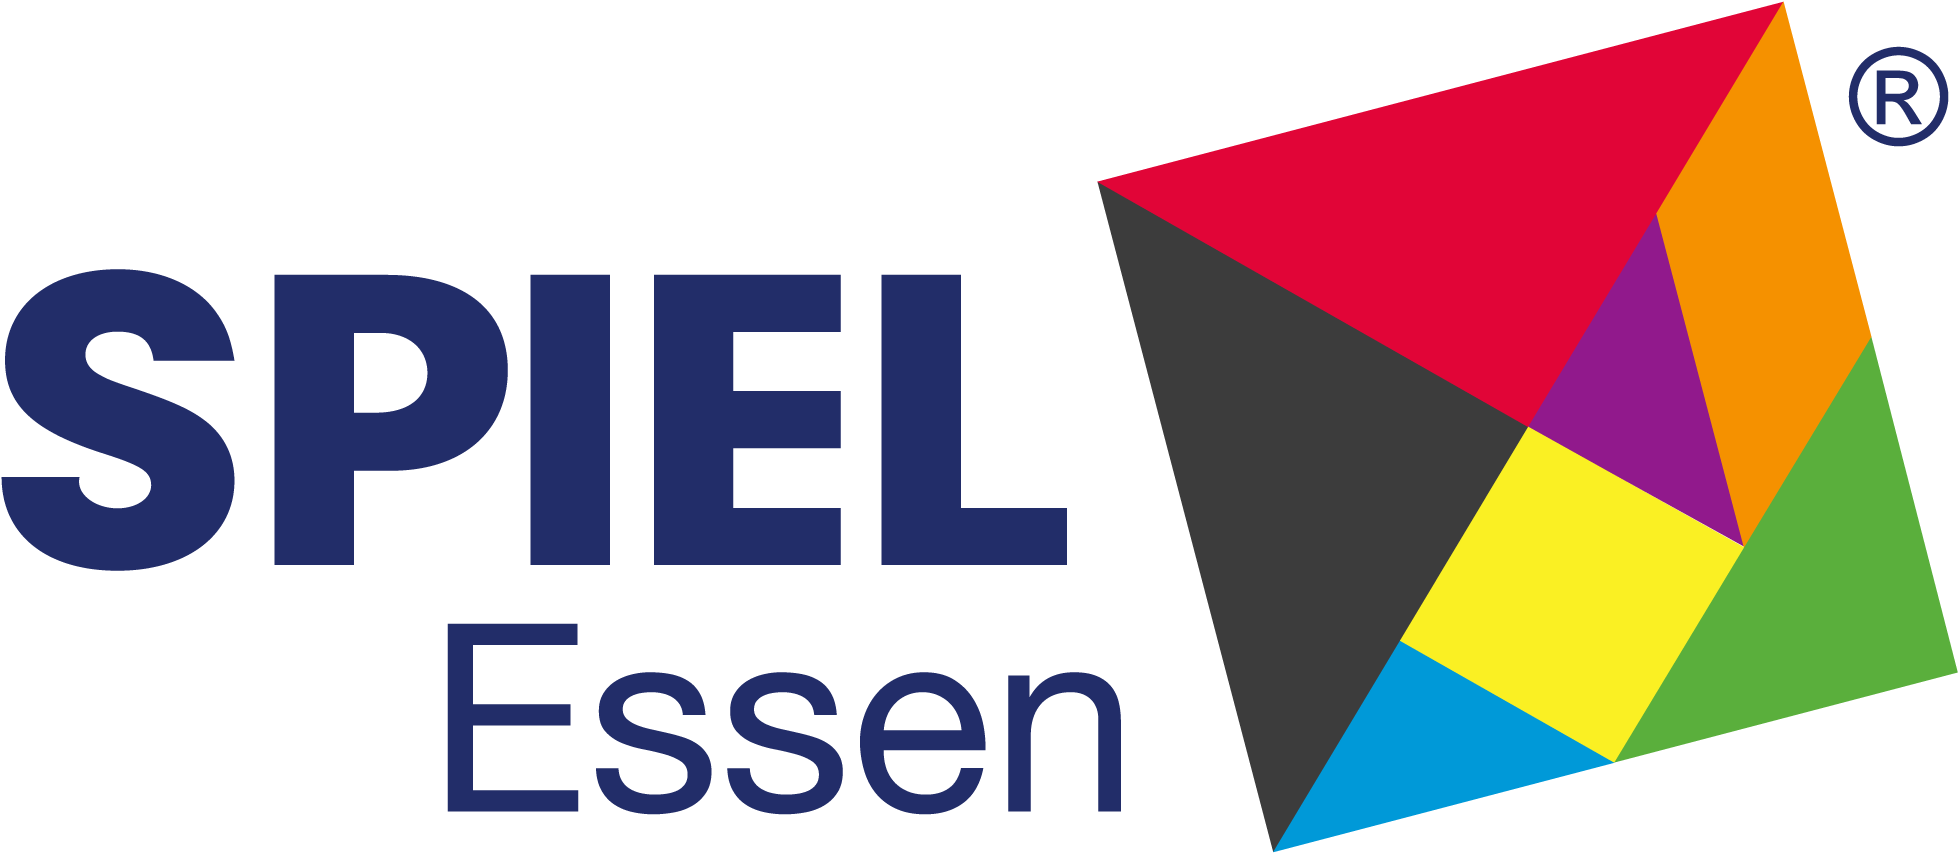 Logo SPIEL Essen